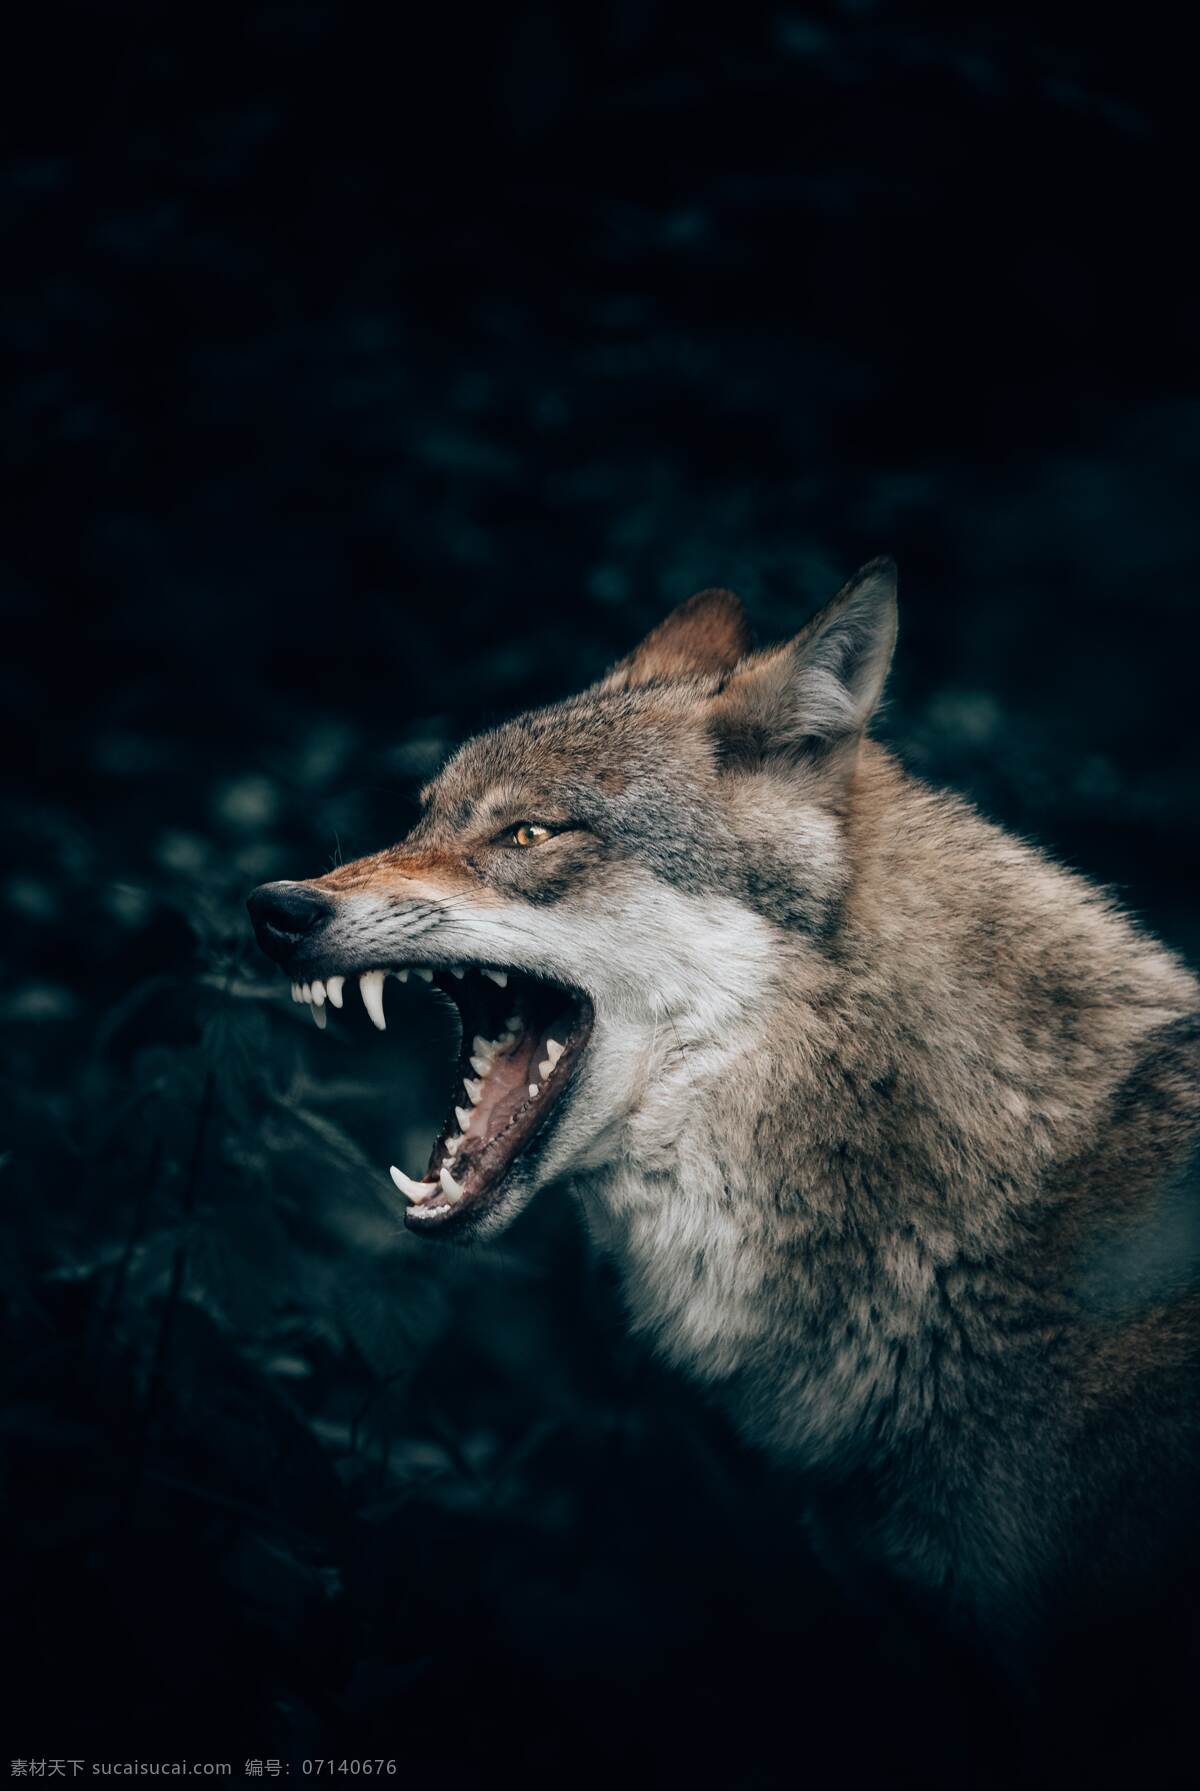 猛兽 兽 动物 动物头 动物头部 大灰狼 狼头 狼牙 生物世界 野生动物